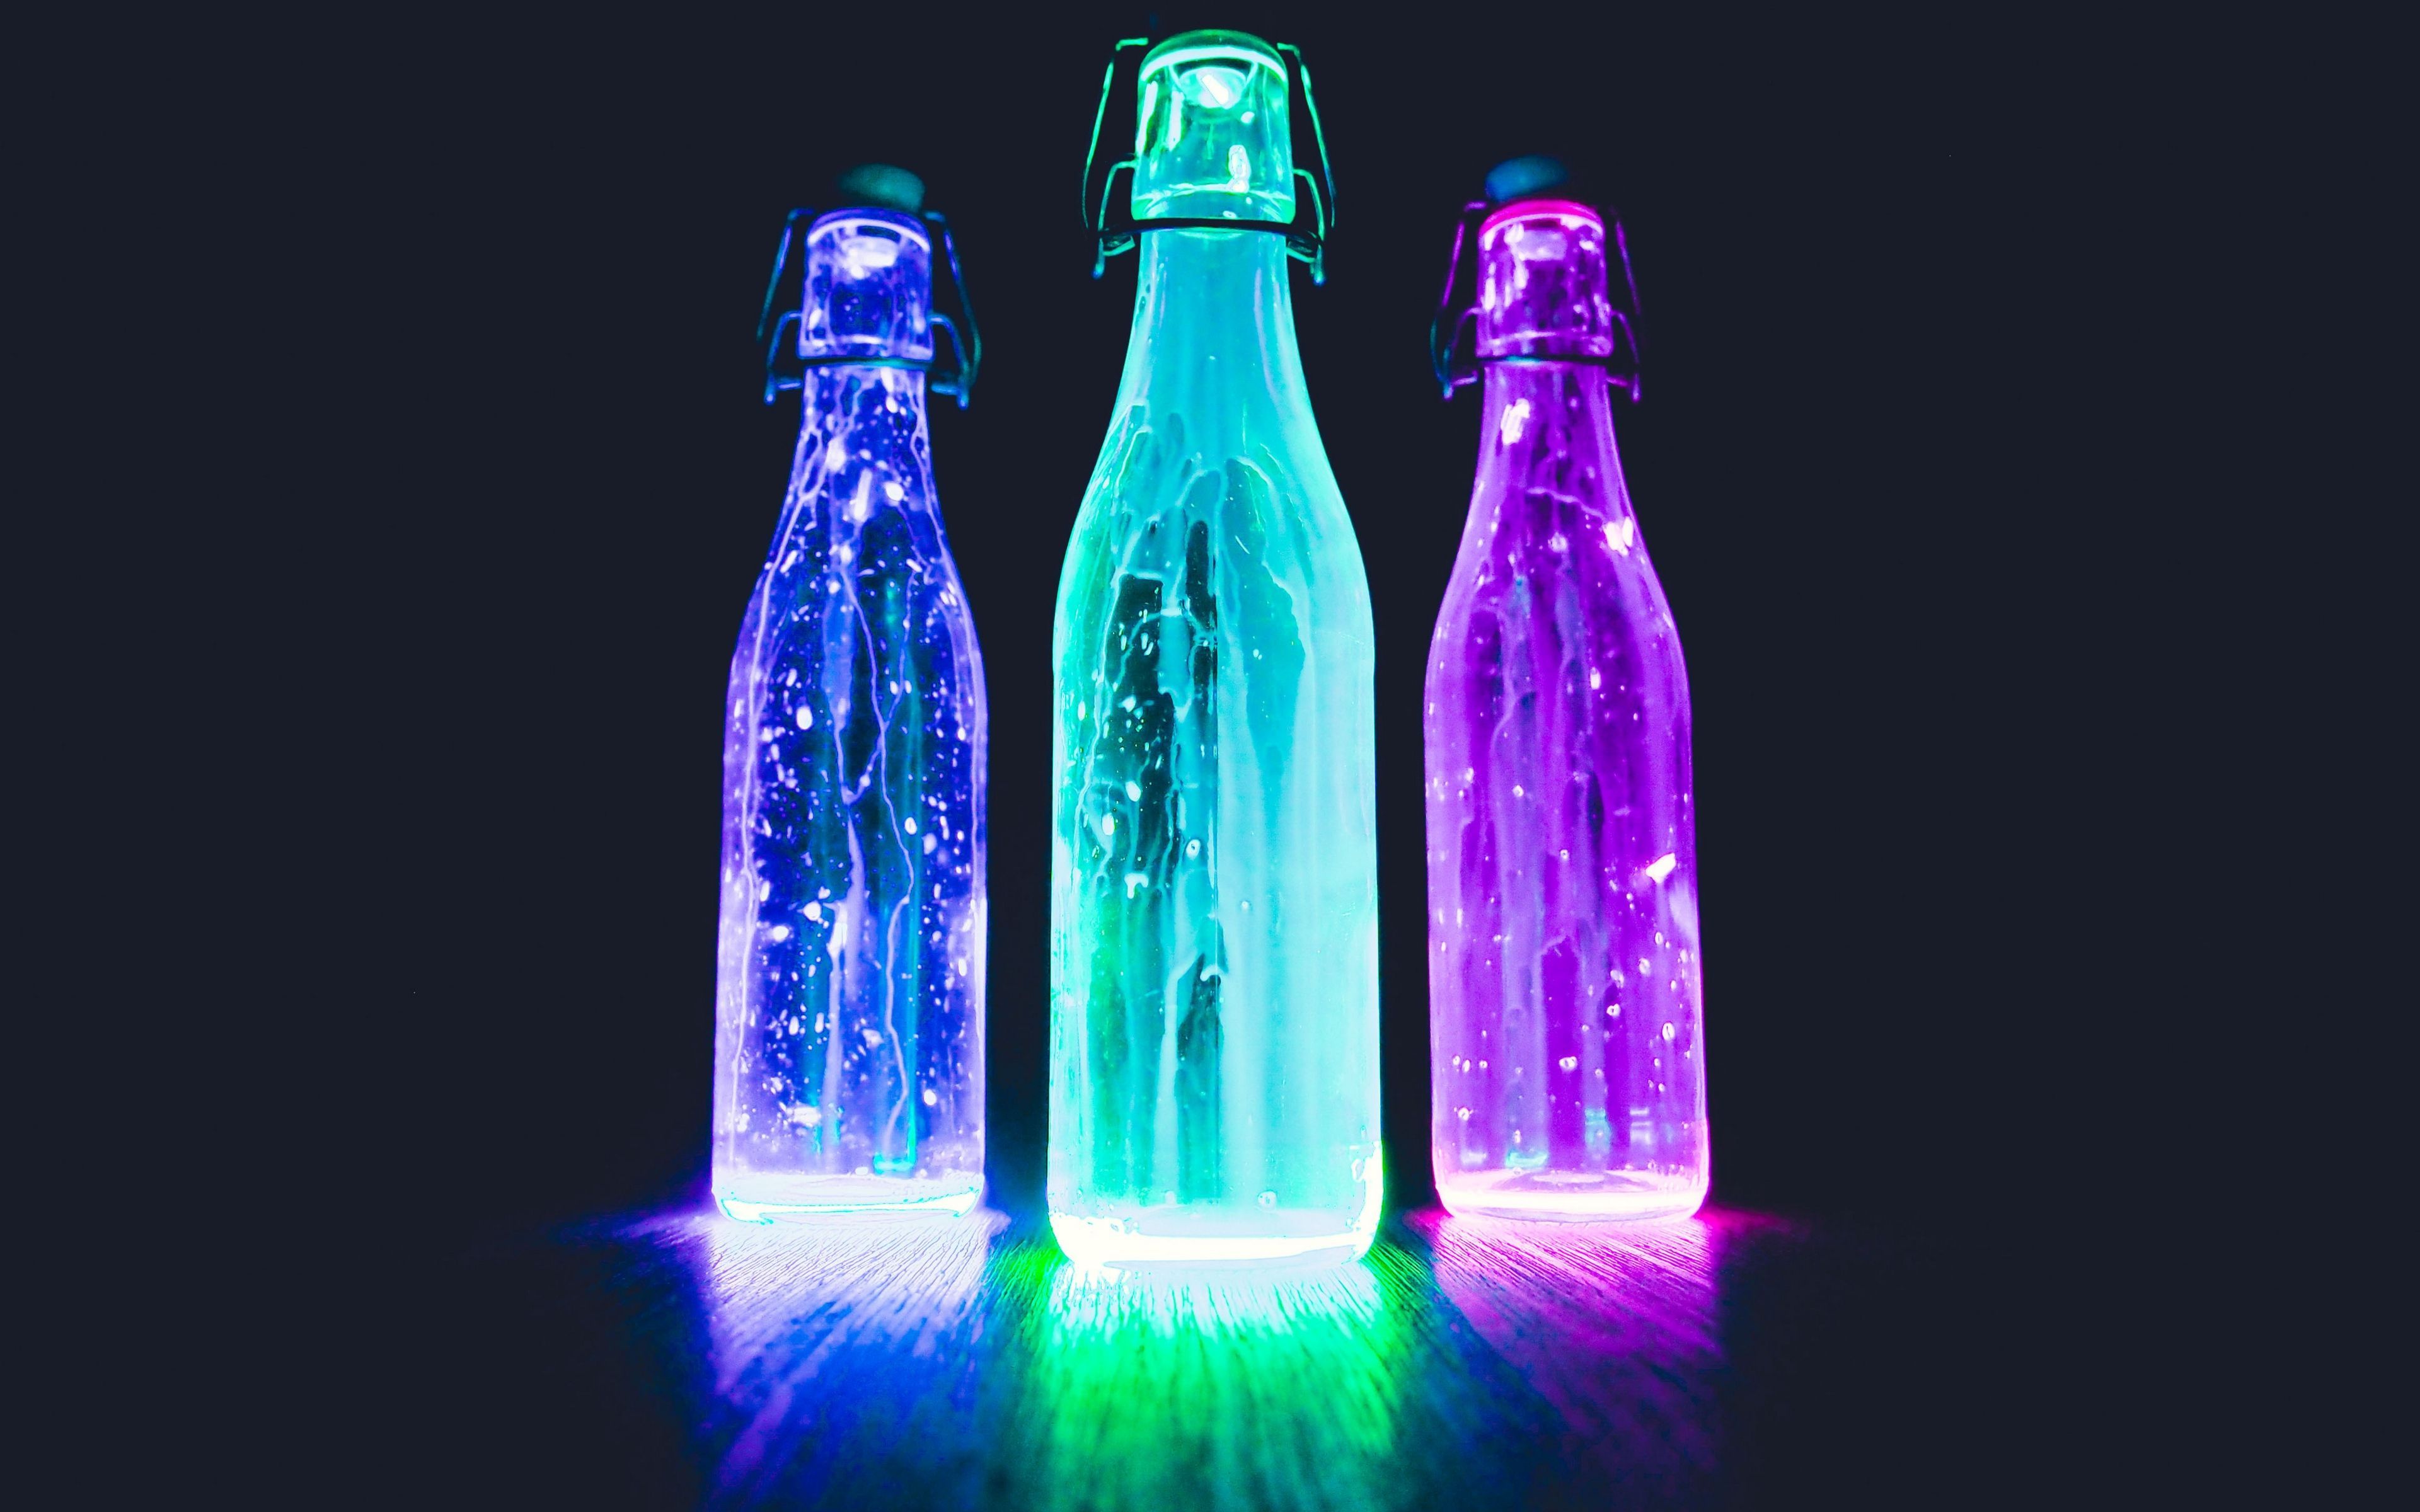 Liquid HD Neon Wallpapers - Los mejores fondos de Liquid HD Neon gratis